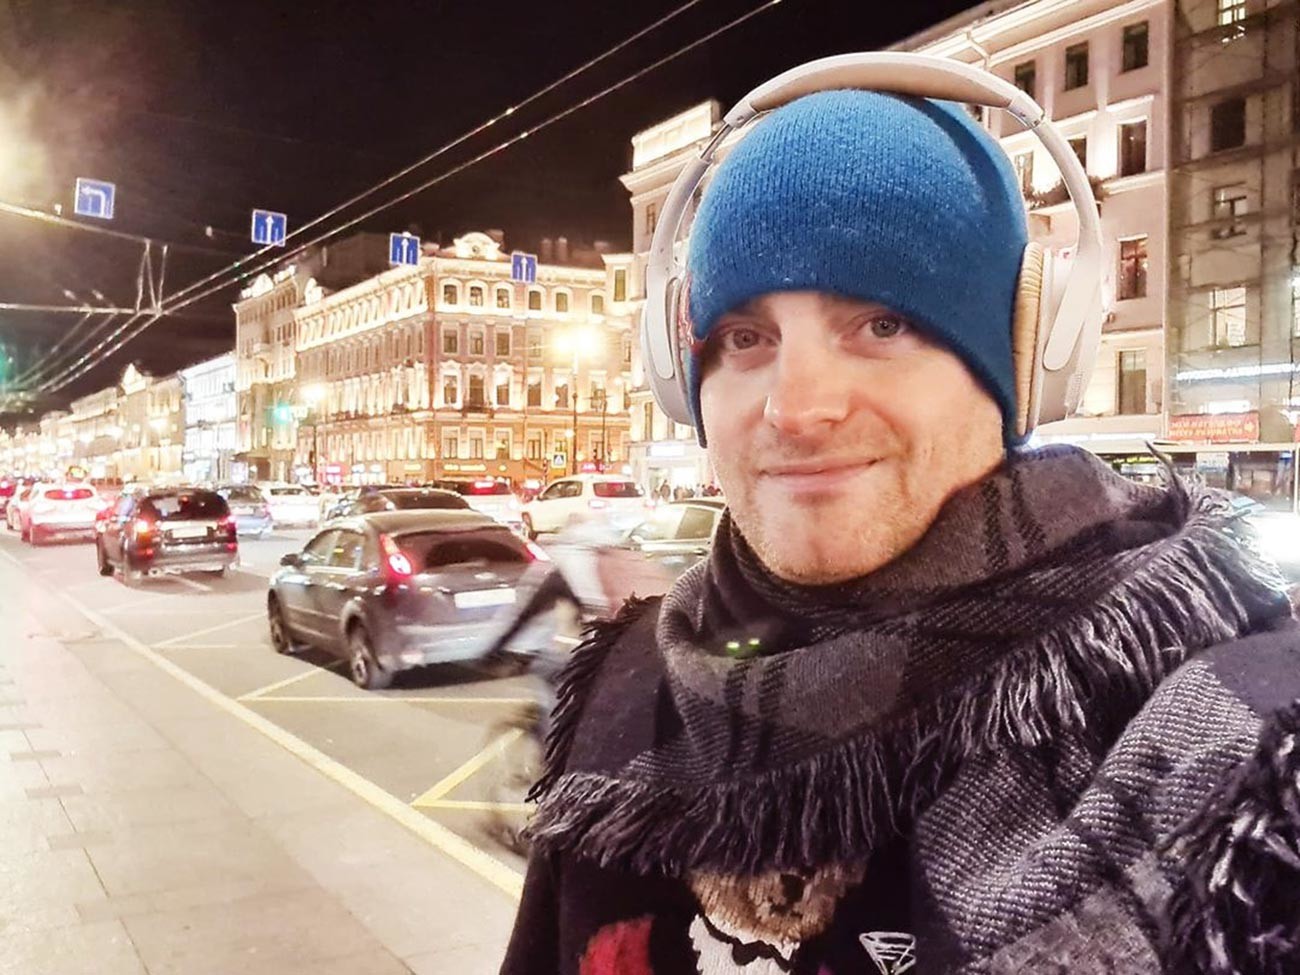 Craig in St. Petersburg